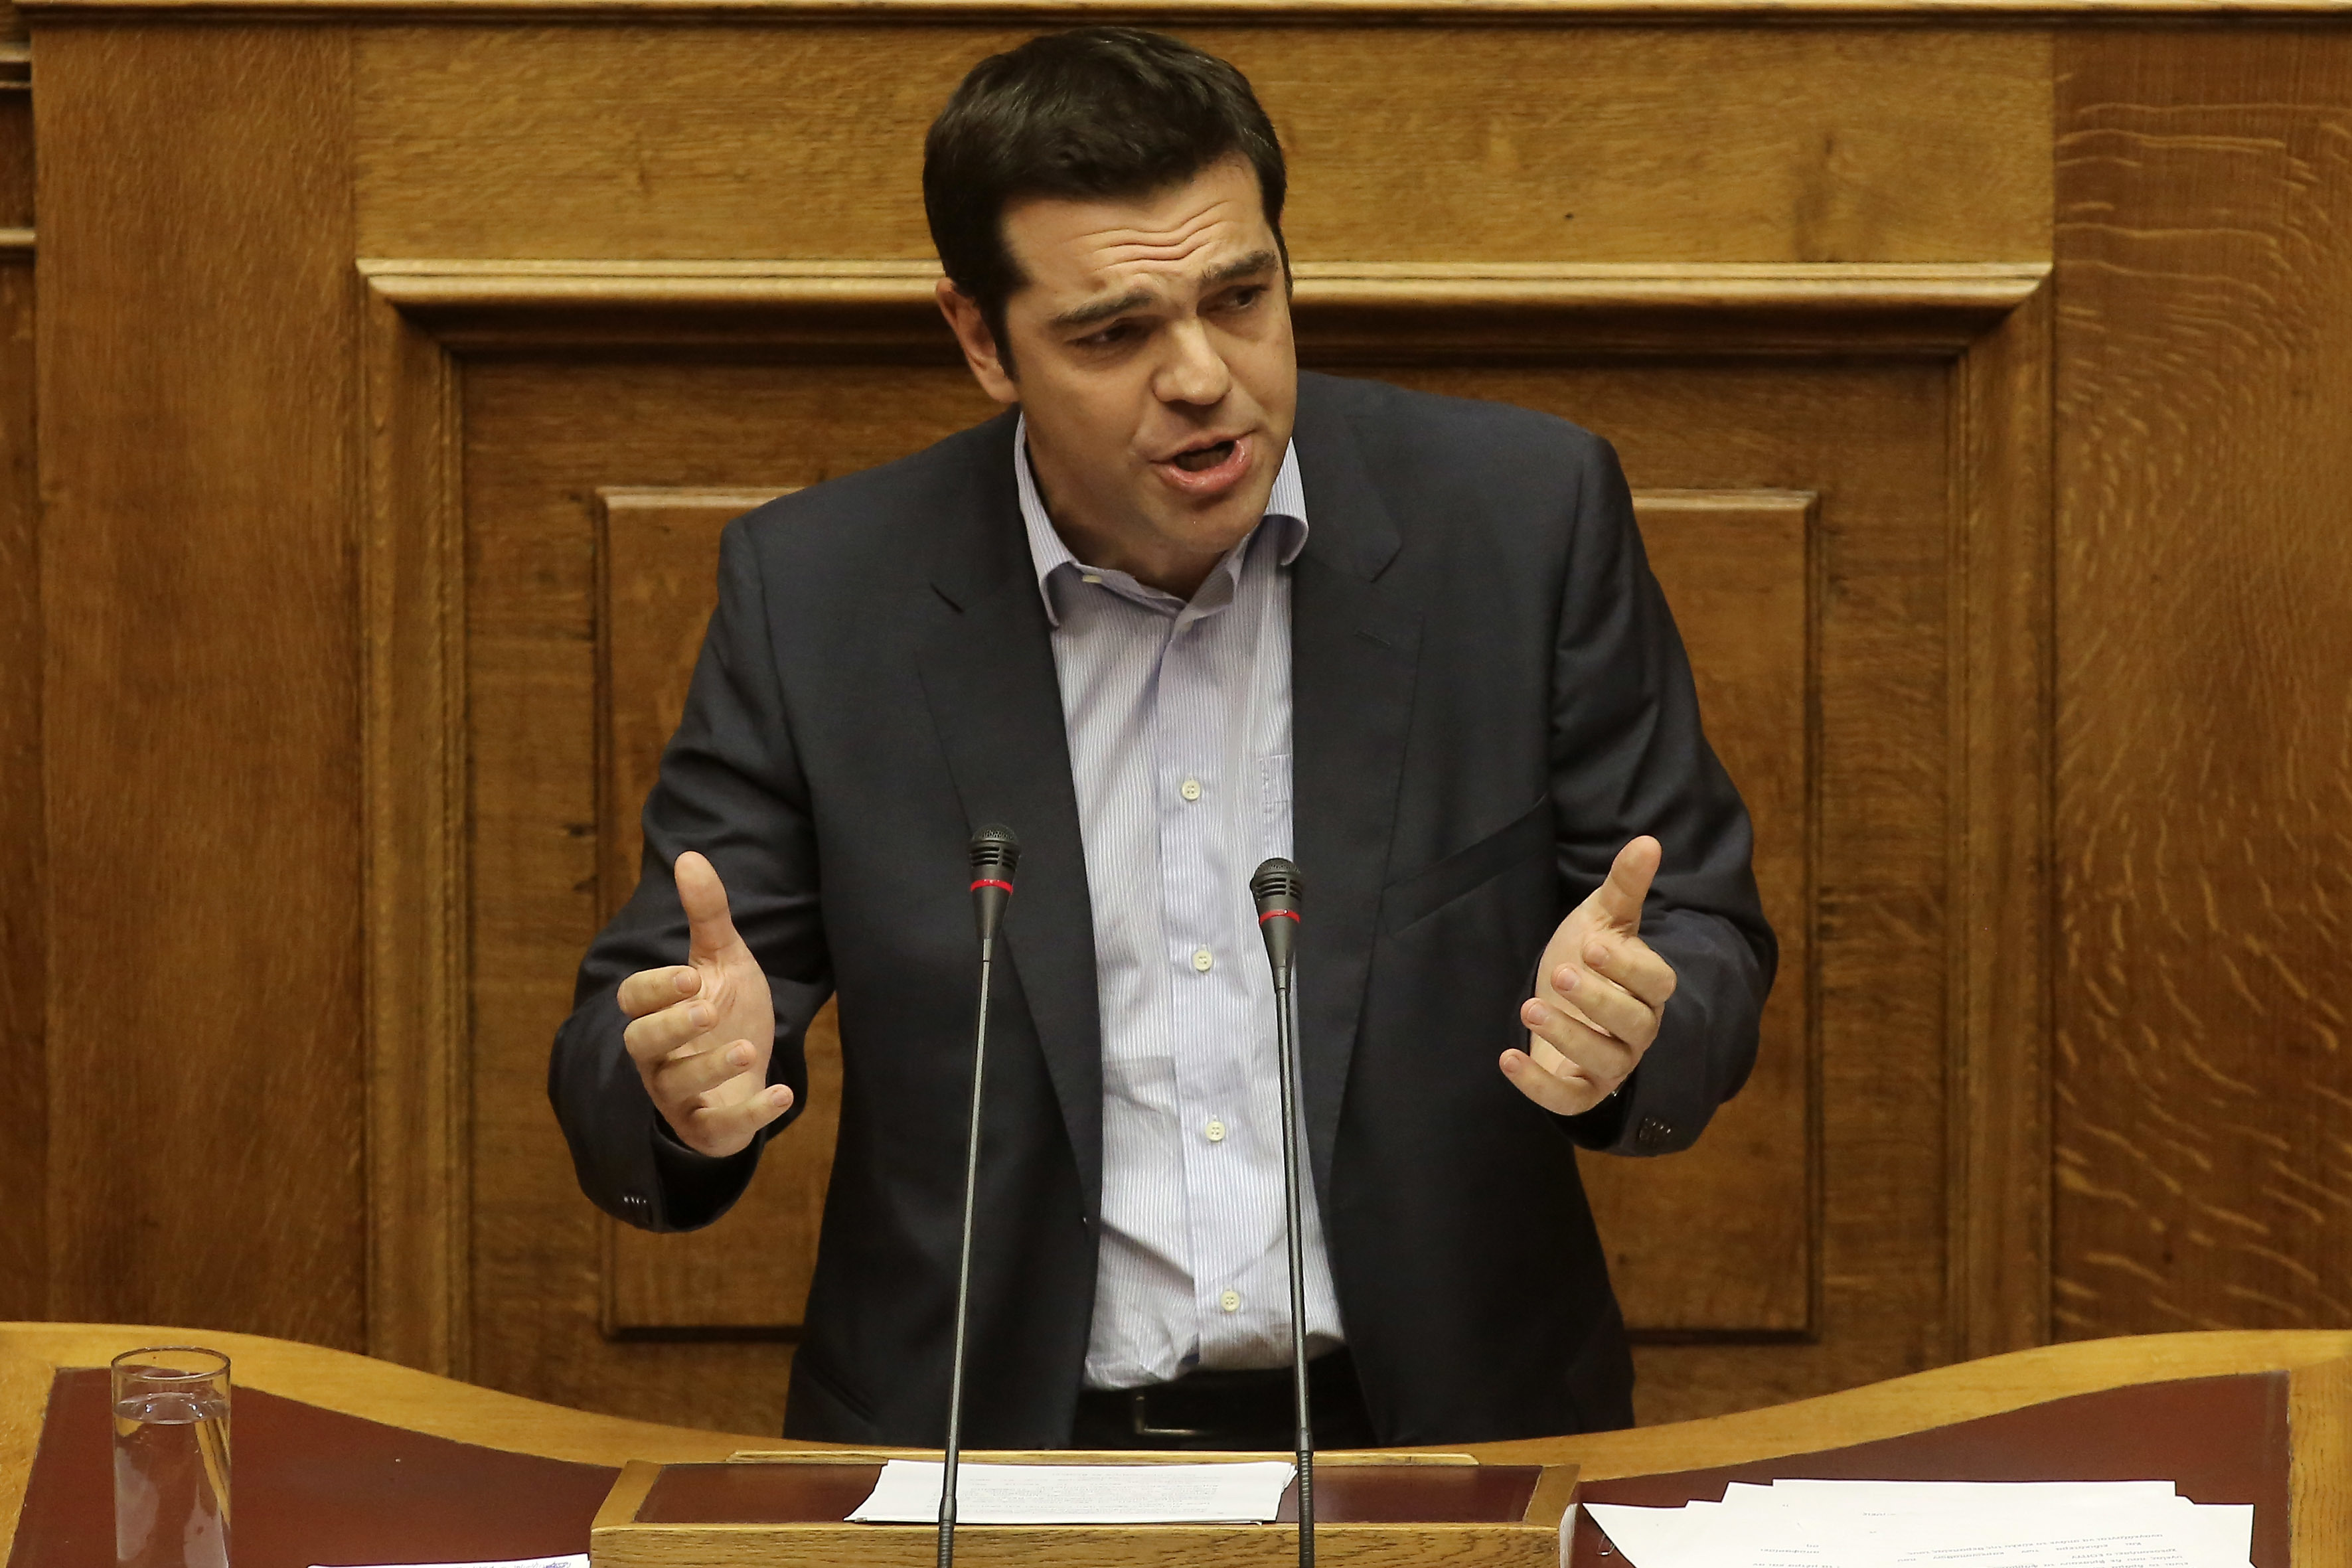 “Ο ΣΥΡΙΖΑ έχει τη λύση για την απασχόληση, στην Ελλάδα” – Δήλωση Τσίπρα στην “Il Manifesto”